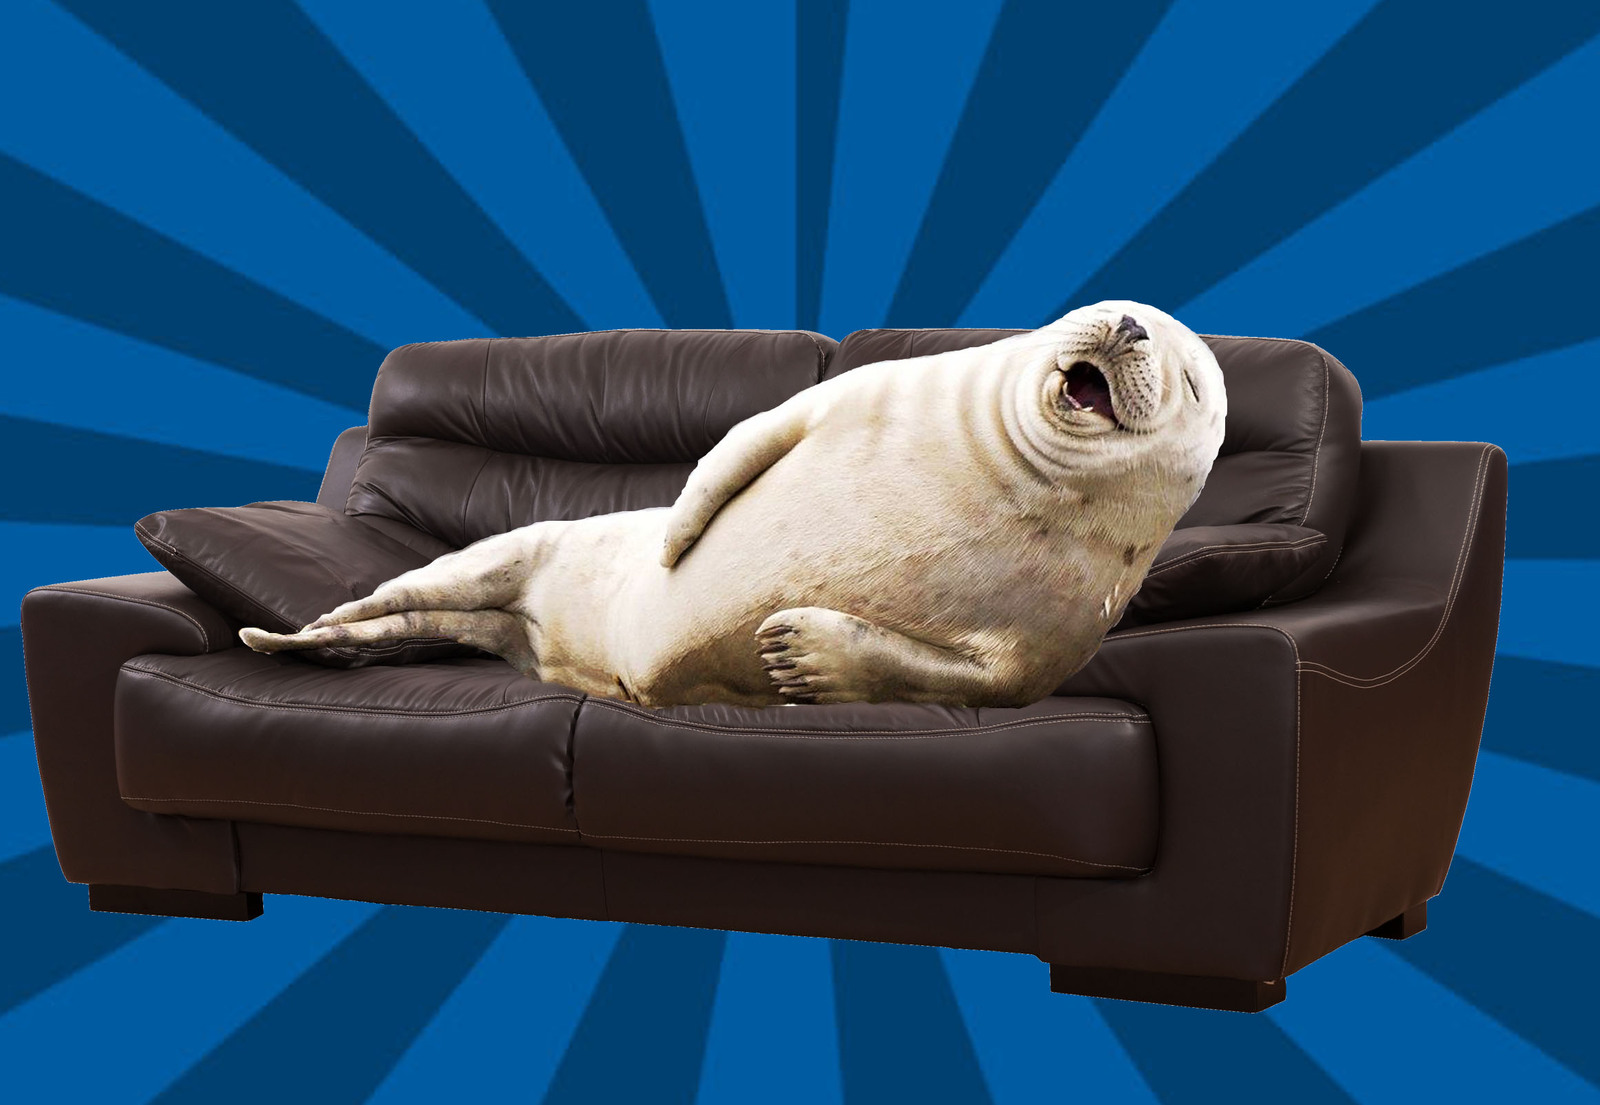 Реклама с тюленями на диване